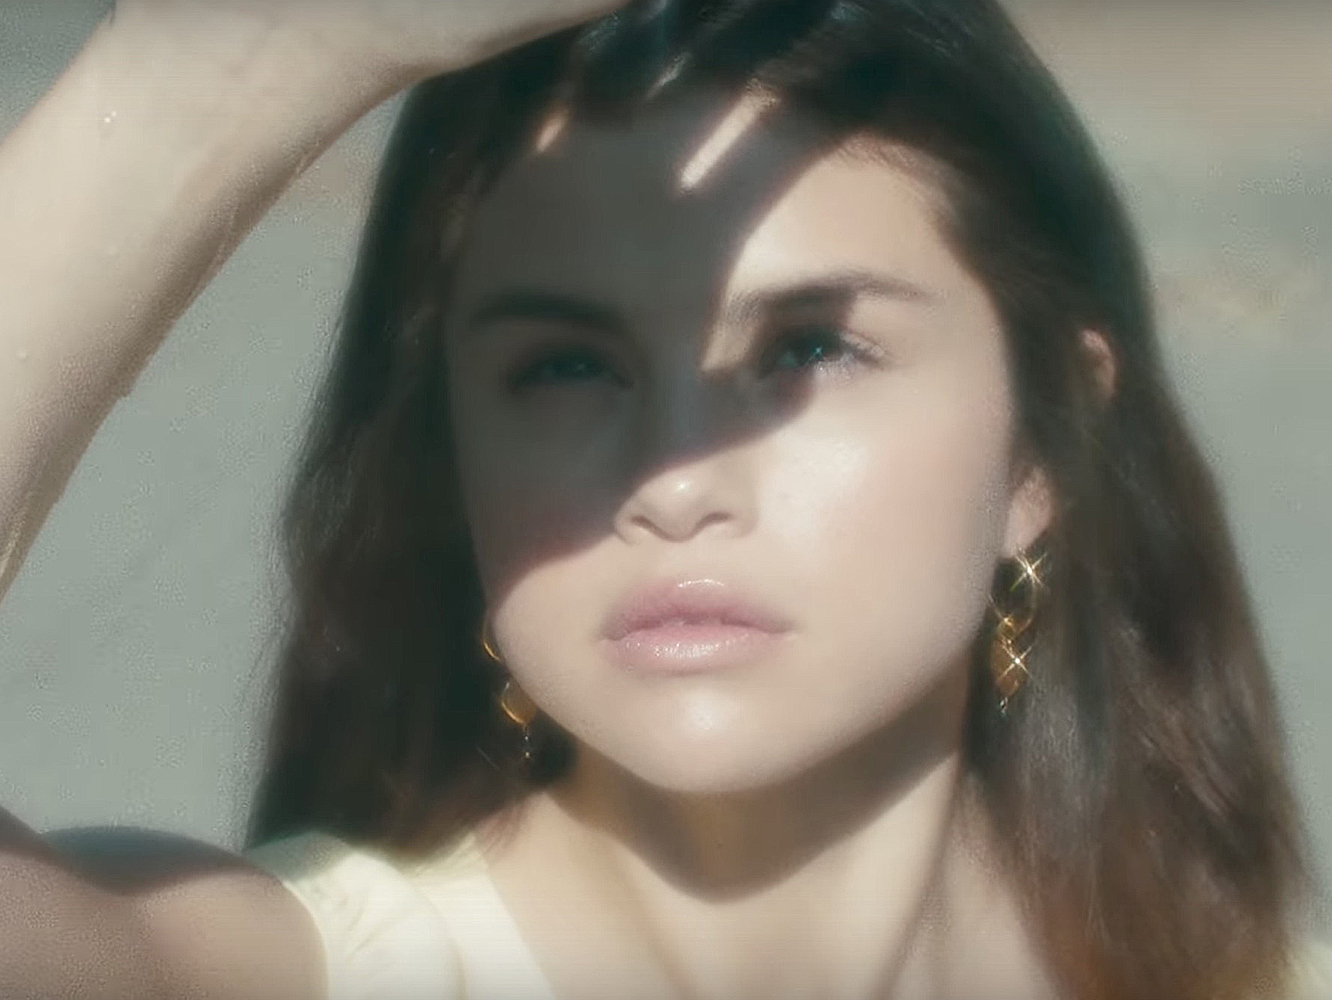  Siniestro vídeo para ‘Fetish’, con Selena Gomez rizándose la lengua